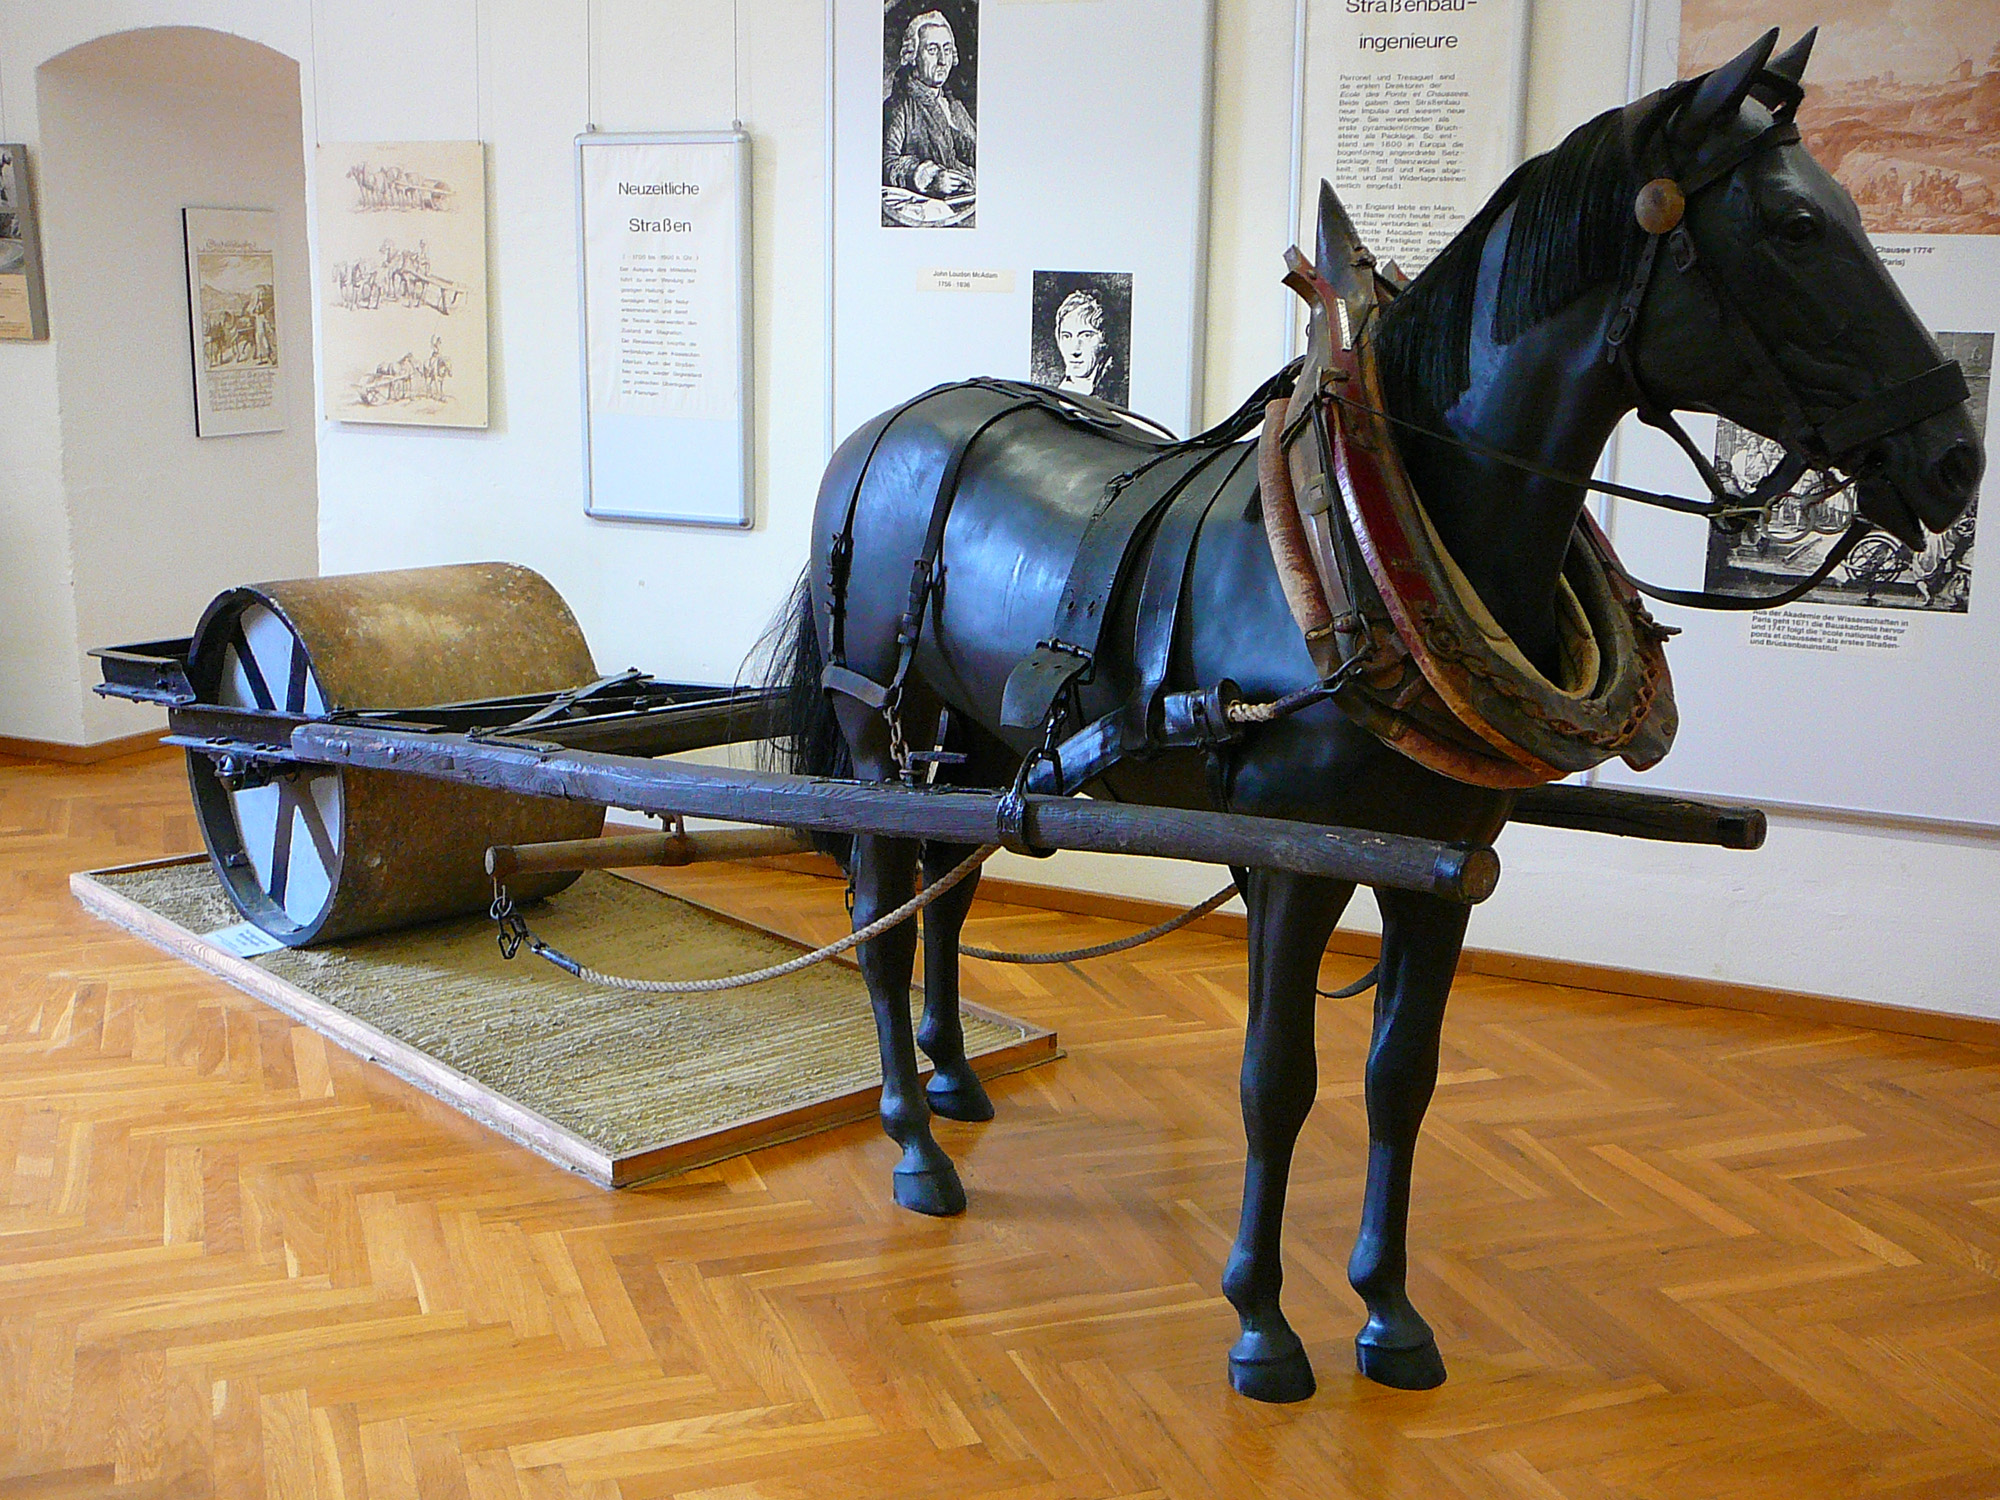 Deutsches Straßenmuseum, Germersheim. Horse-drawn road roller 01